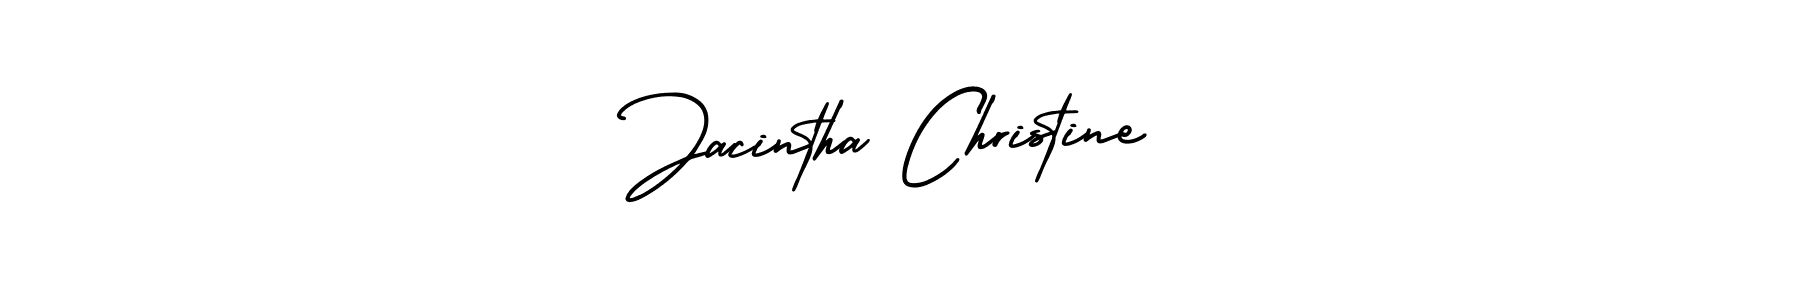 71+ Jacintha Christine Name Signature Style Ideas | Amazing Online ...